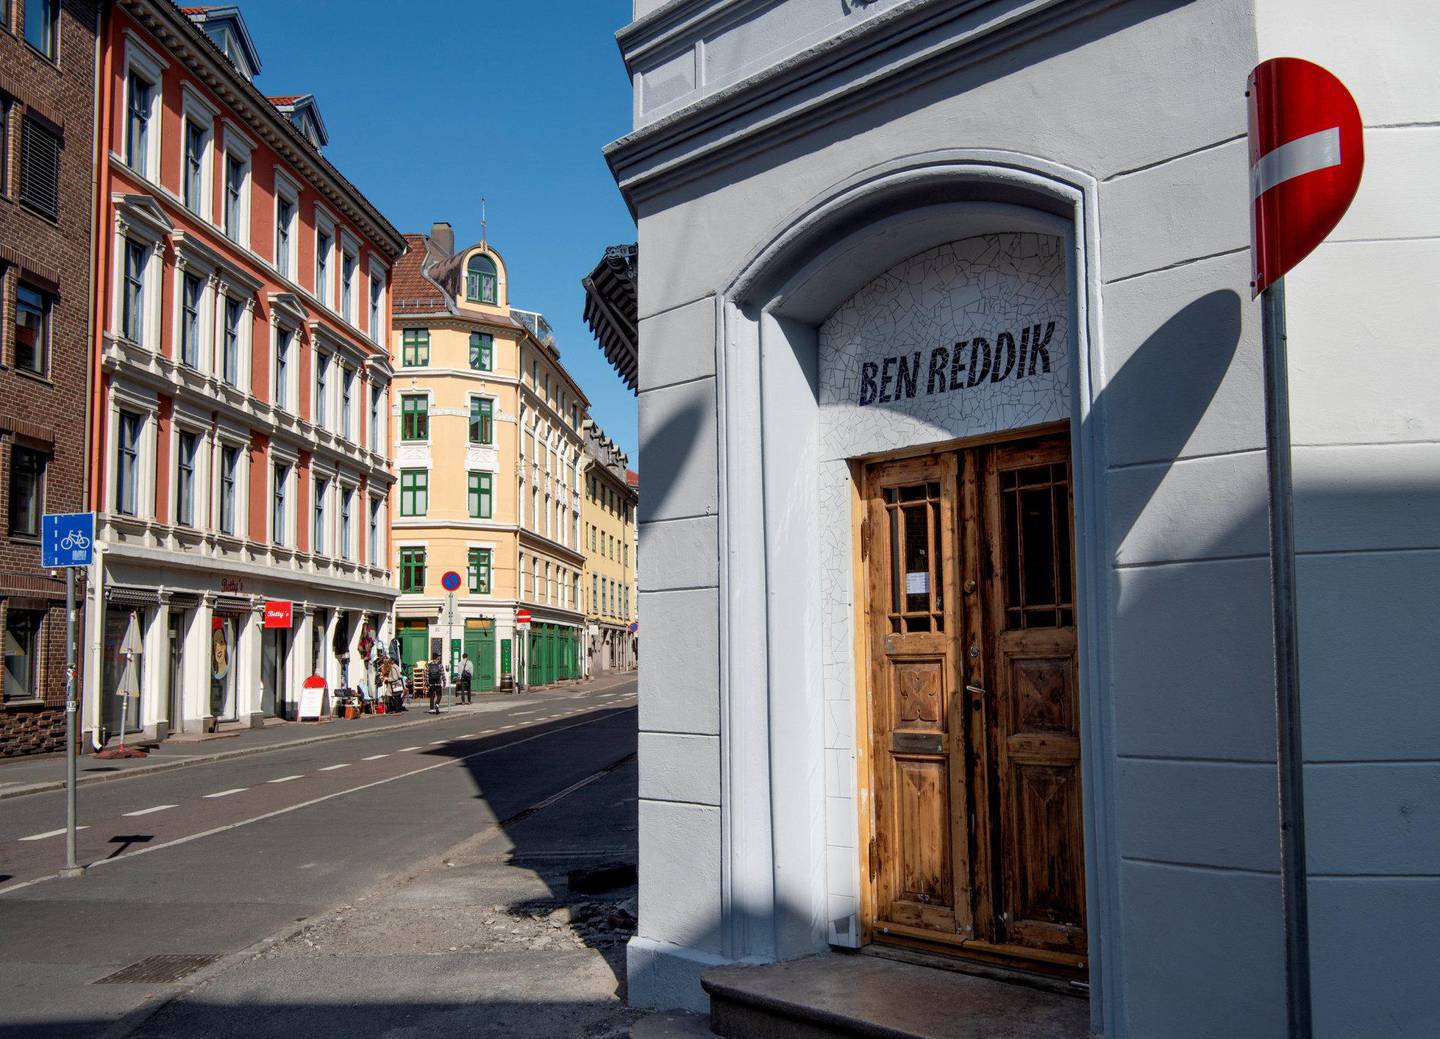 Bare et par uker etter at Ben Reddik åpnet dørene  på Grünerløkka har stedet allerede rukket å bli populært blant løkkafolket. begge foto: mimsy møller